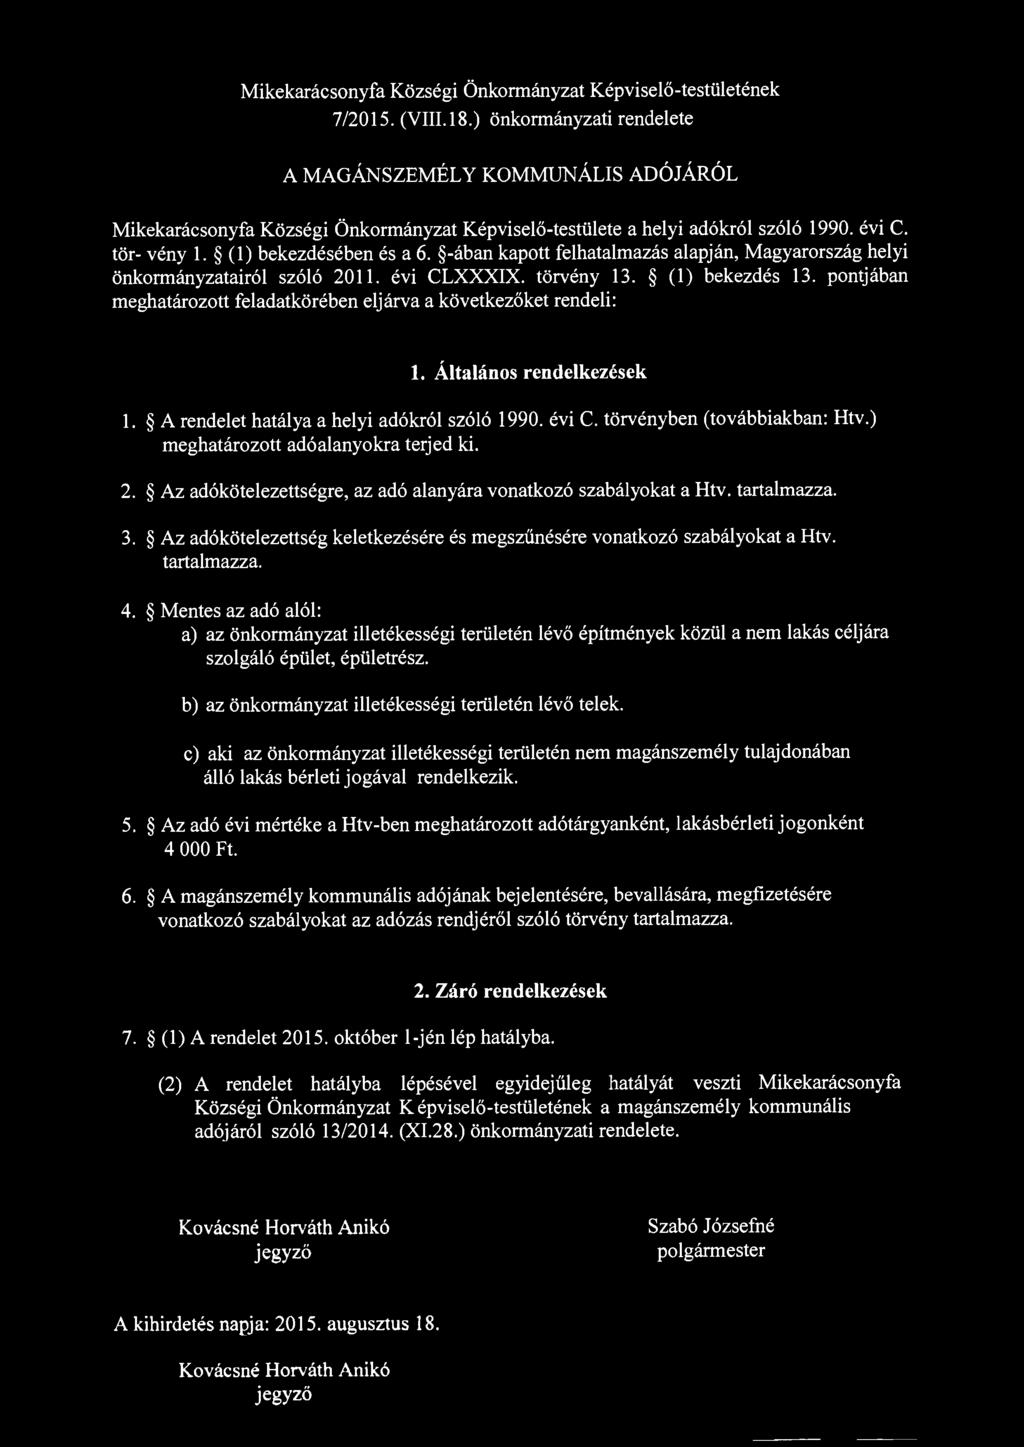 -ában kapott felhatalmazás alapján, Magyarország helyi önkormányzatairól szóló 2011. évi CLXXXIX. törvény 13. (1) bekezdés 13. pontjában meghatározott feladatkörében eljárva a következőket rendeli: 1.